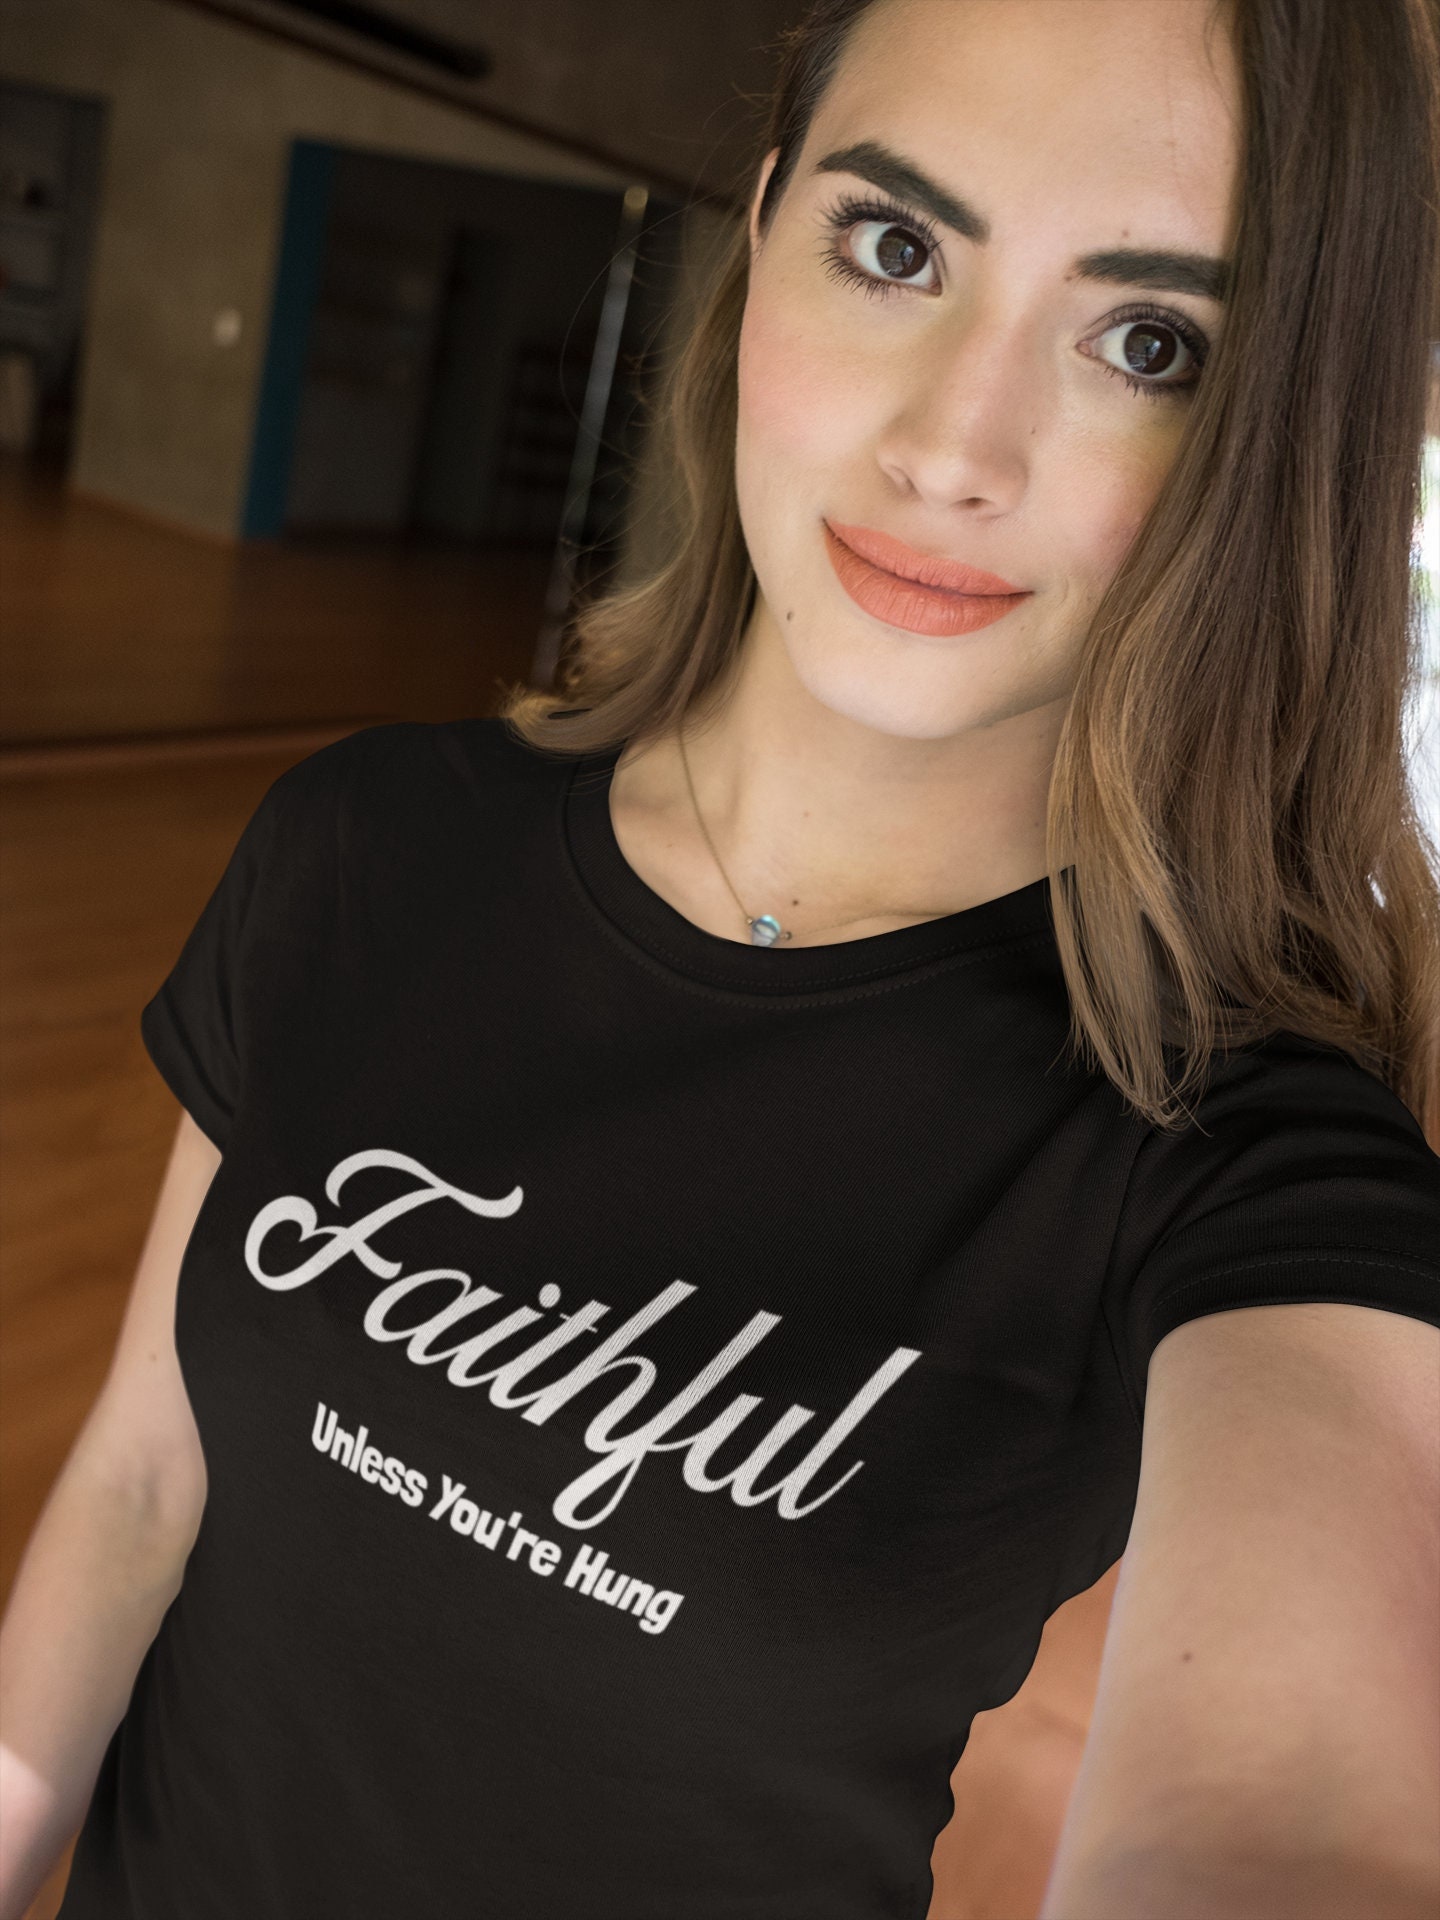 Faithful Unless Youre Hung Shirt Hotwife Slut T-shirt image